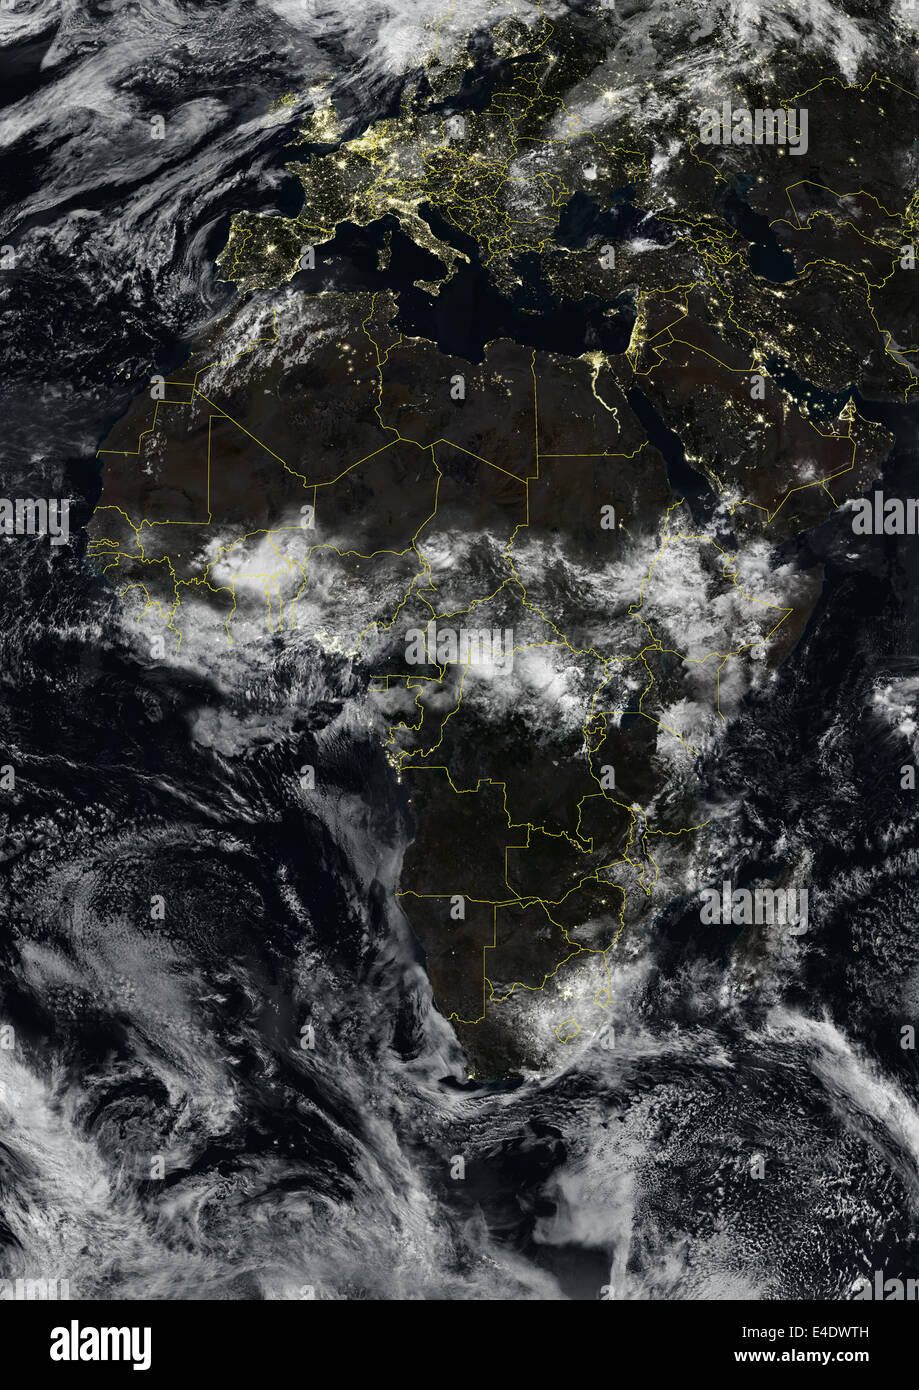 Afrika bei Nacht mit Ländergrenzen und Wolkendichte, wahre Farbe Satellitenbild. Echtfarben-Satellitenbild von Afrika bei n Stockfoto